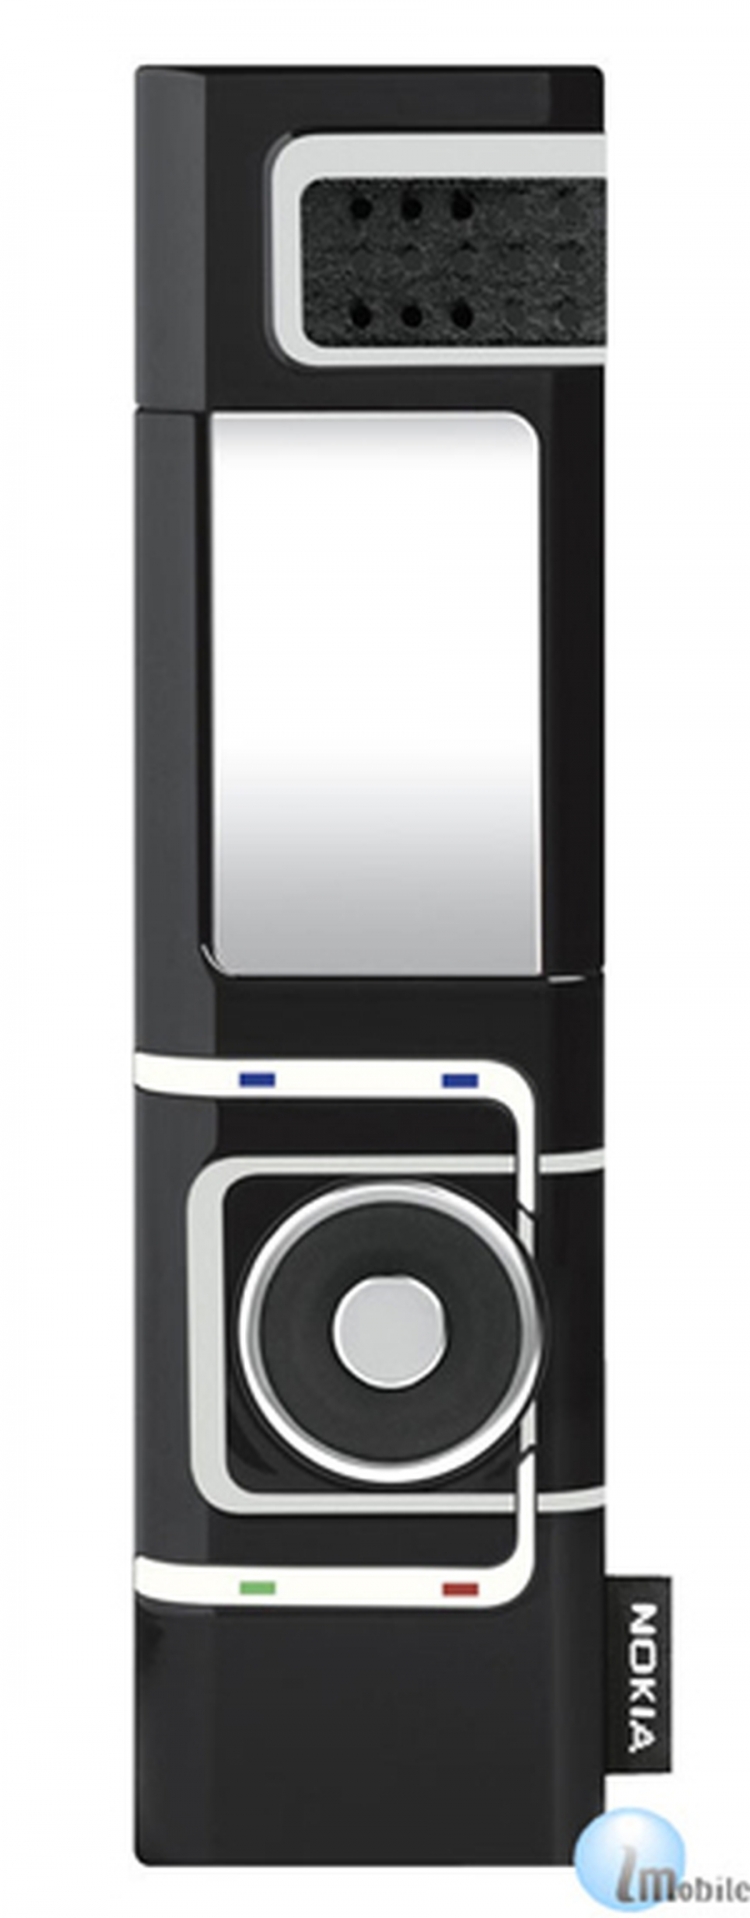 2004. godina - Nokia 7280 / Telefon koji je magazin "Fortune" proglasio jednim od najboljih proizvoda 2004. godine. Bio je poznat i po nadimku "Karmin telefon".